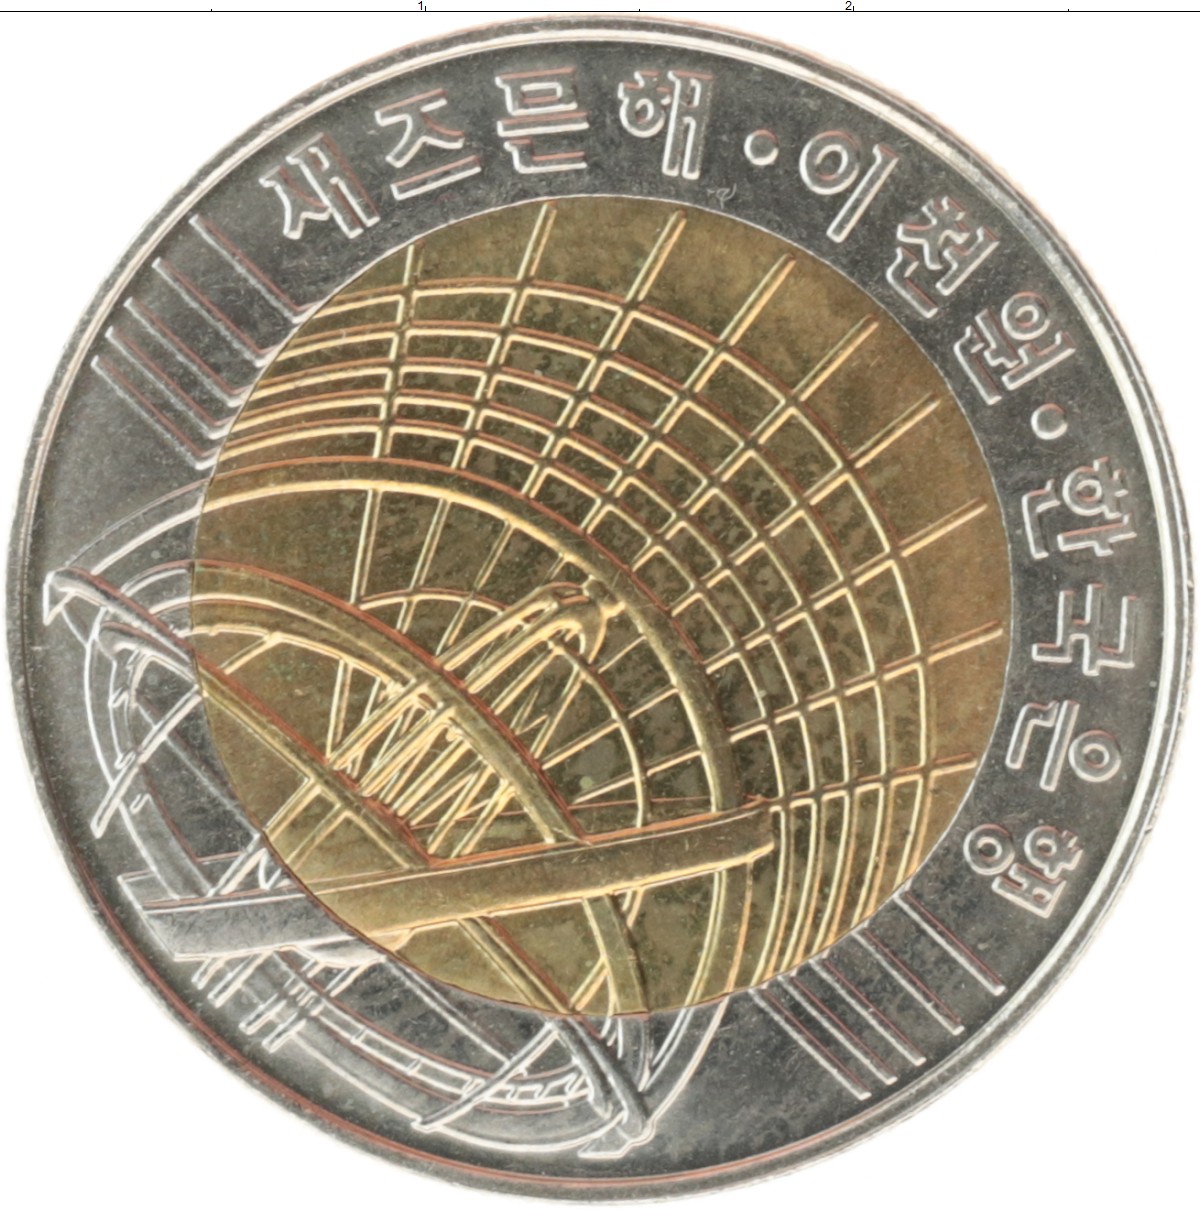 2000 вон в рублях на сегодня. Миллениум 2000 год. Монеты Южная Корея 2000 г. 2000 Вон в рублях. Южная Корея 2000 вон, 2000 Миллениум описание.